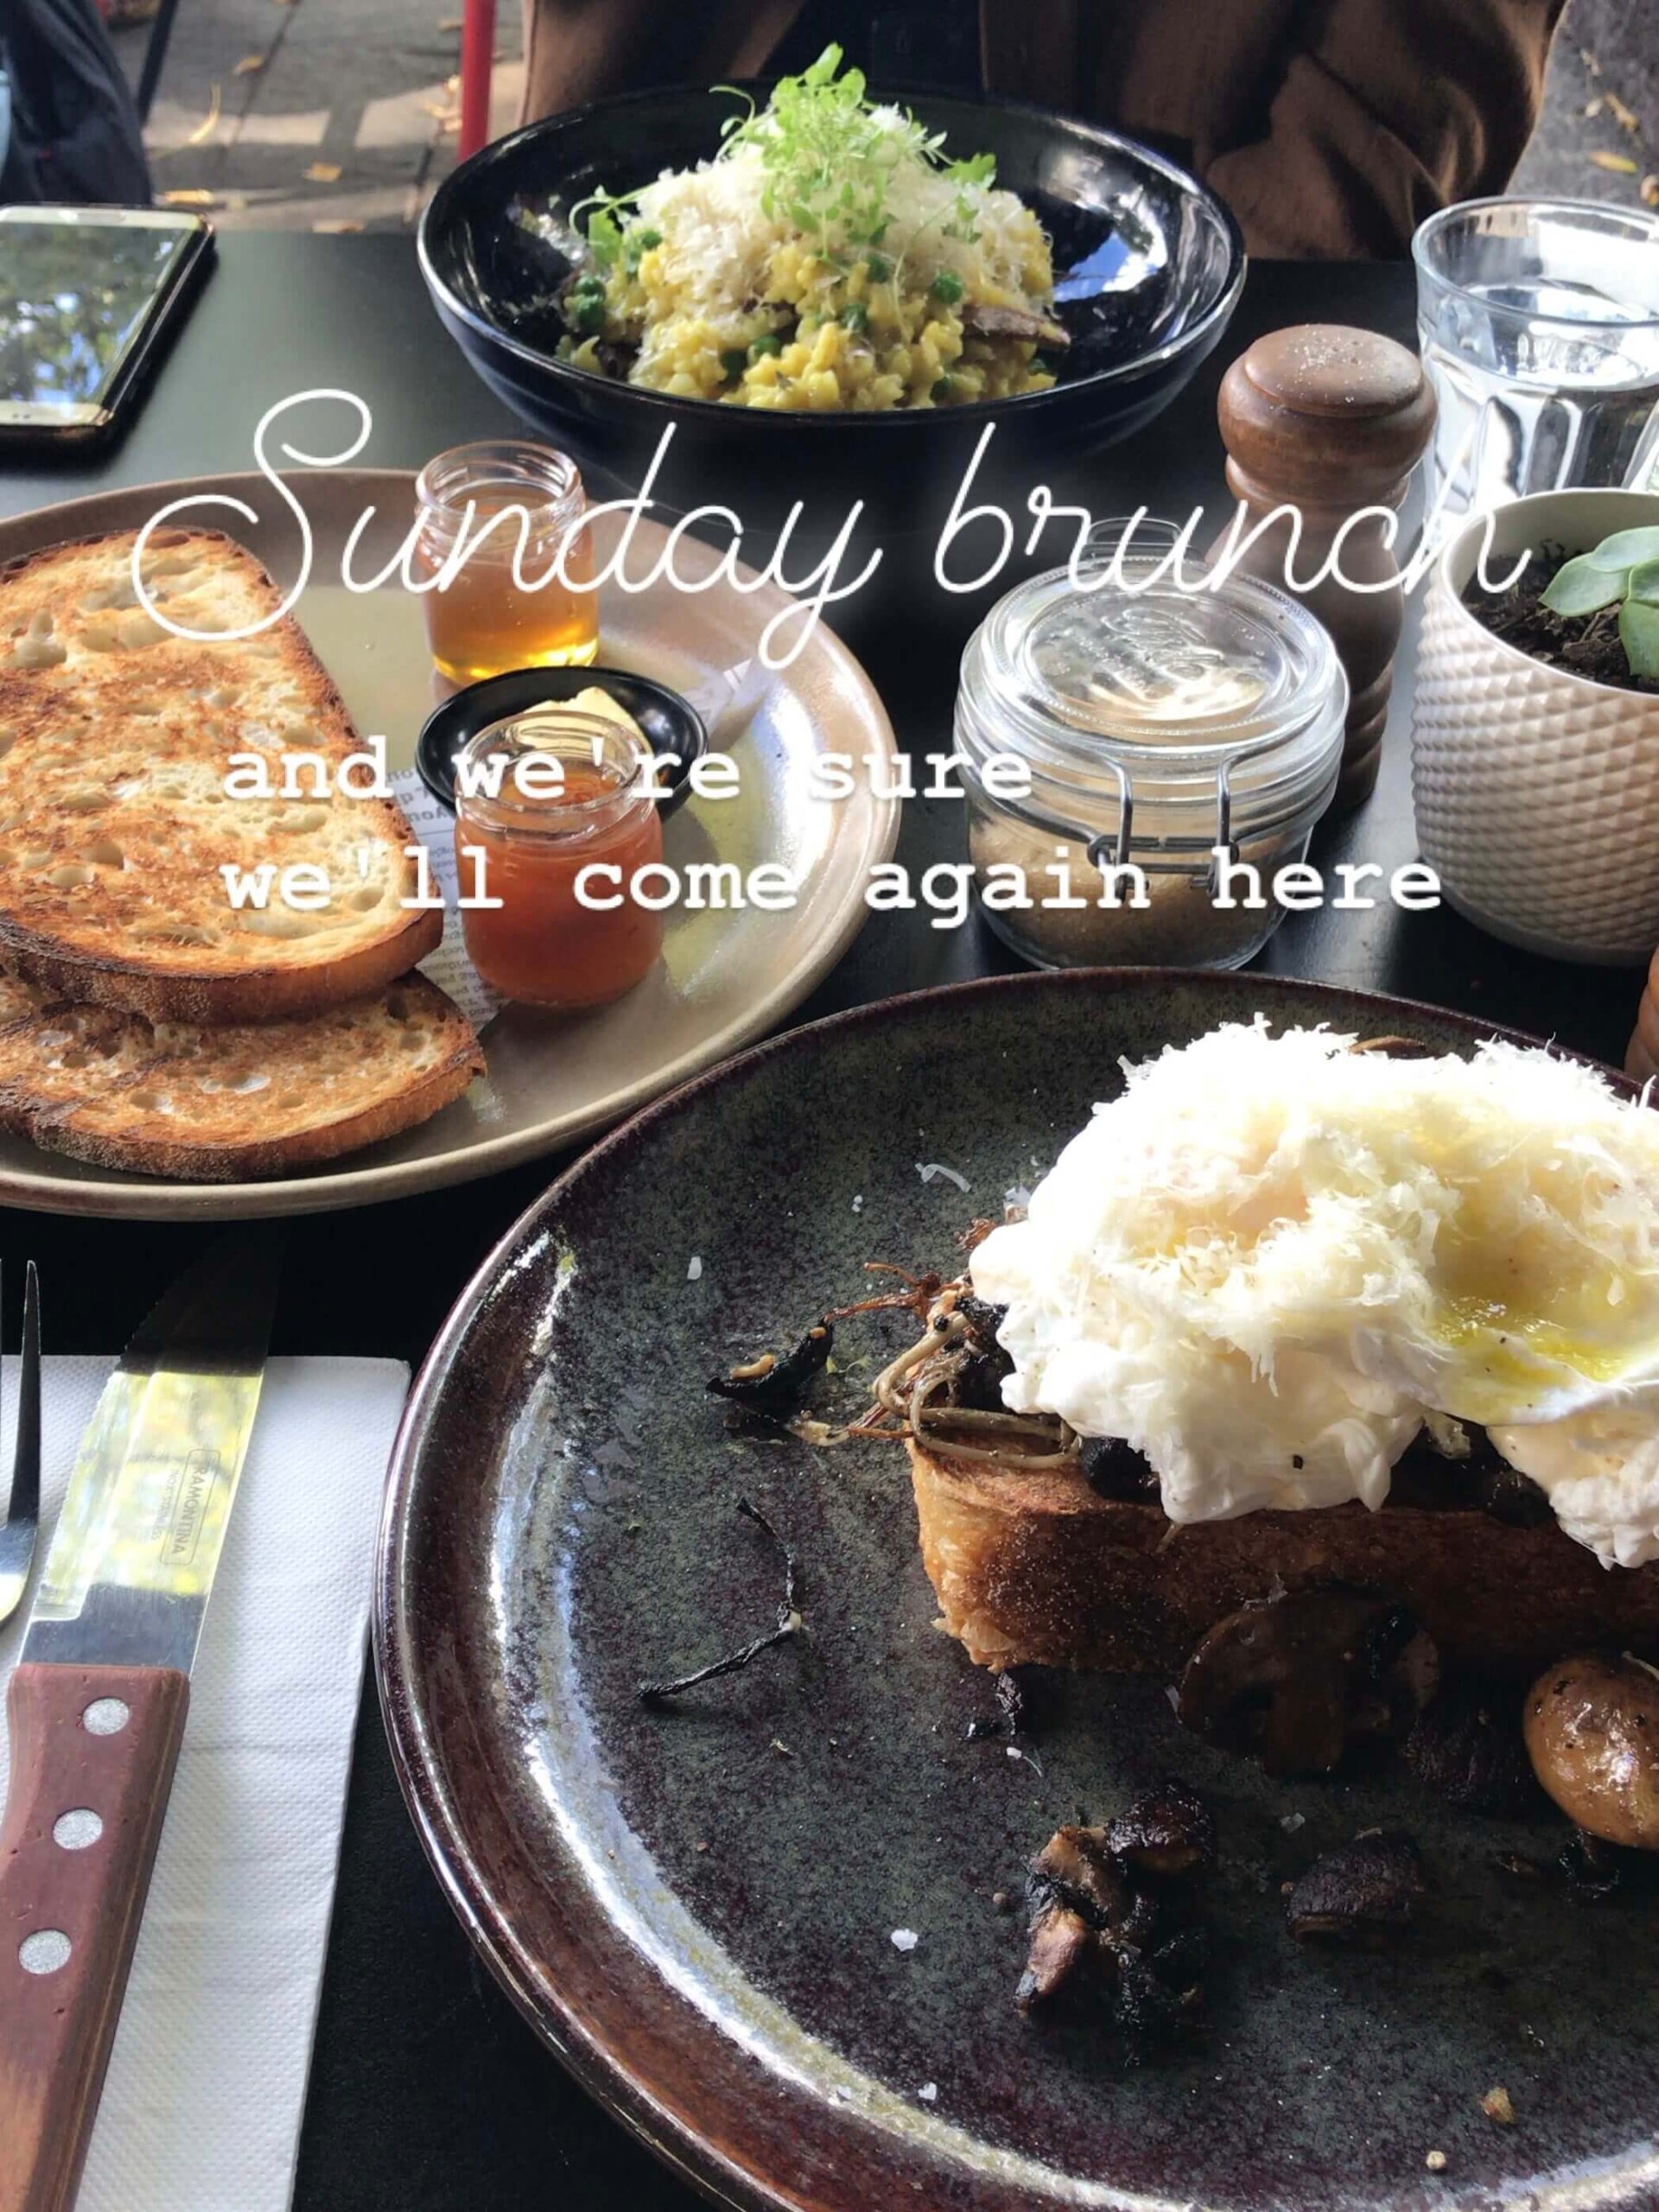 シドニーのカフェ【Social Brew Cafe】の朝食メニューを撮影した写真